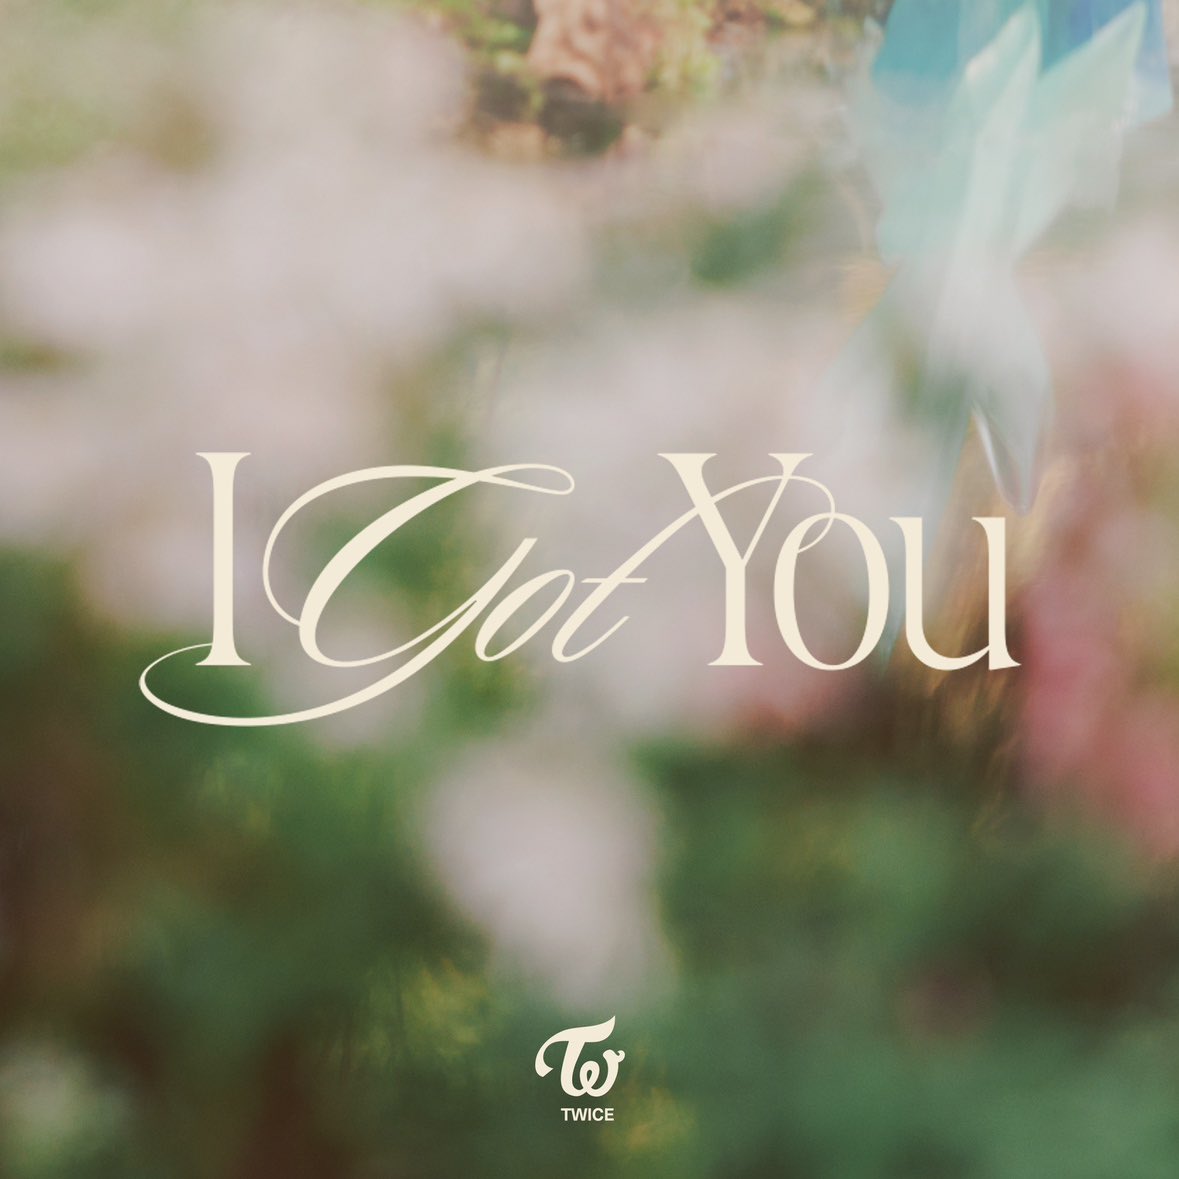 2일(금), 💖트와이스 선공개 싱글 "I GOT YOU" 발매🍭 | 인스티즈